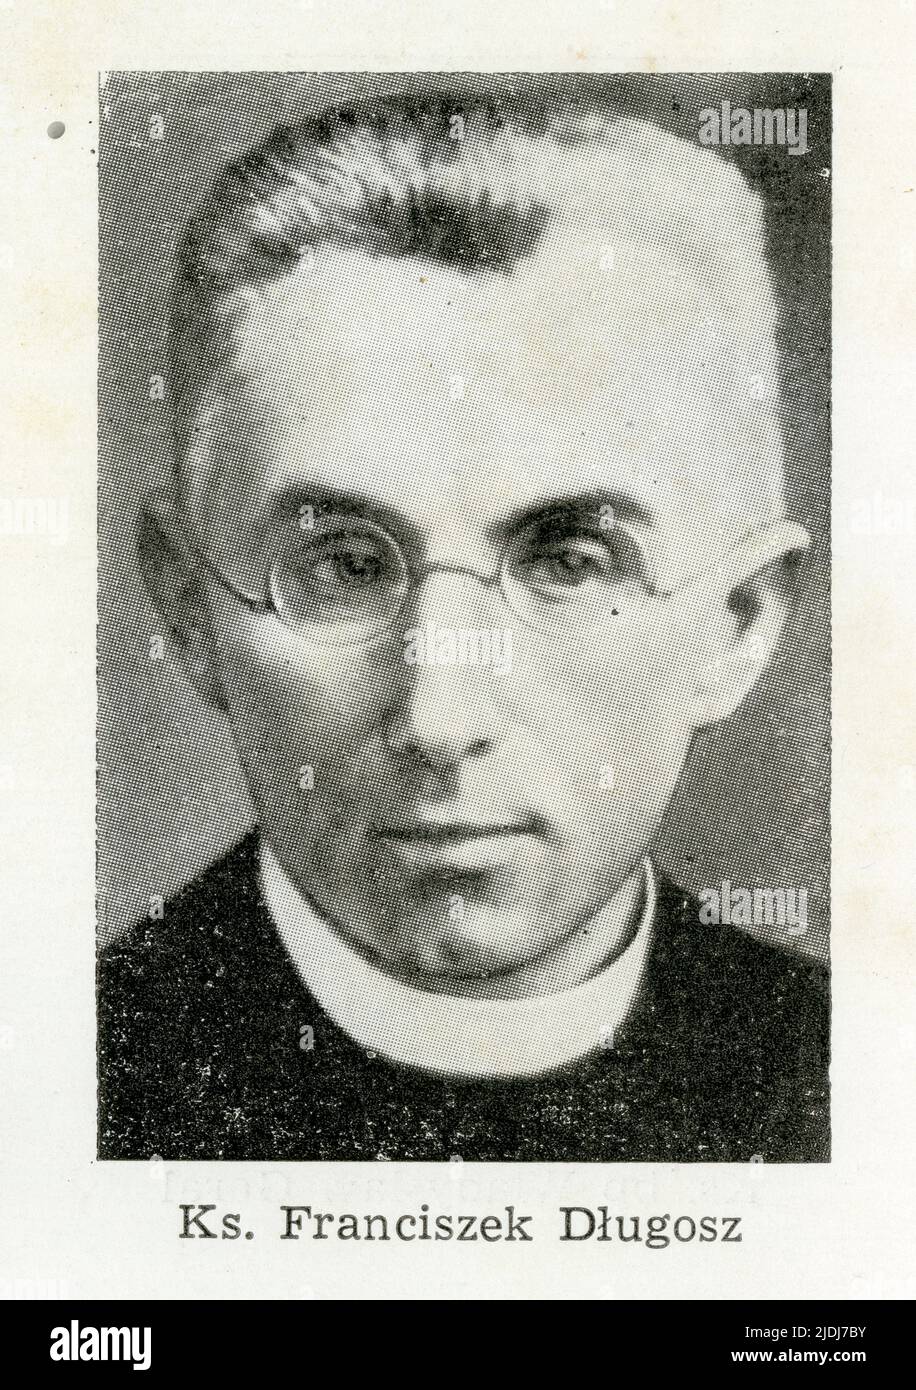 Ksiadz Franciszek Dlugosz (1874-1940), proboszcz w Studzionce.Urodził się 8 stycznia 1874 w Kolonii Śliwa, należącej do parafii w Woźnikach. Jego rodz Foto Stock